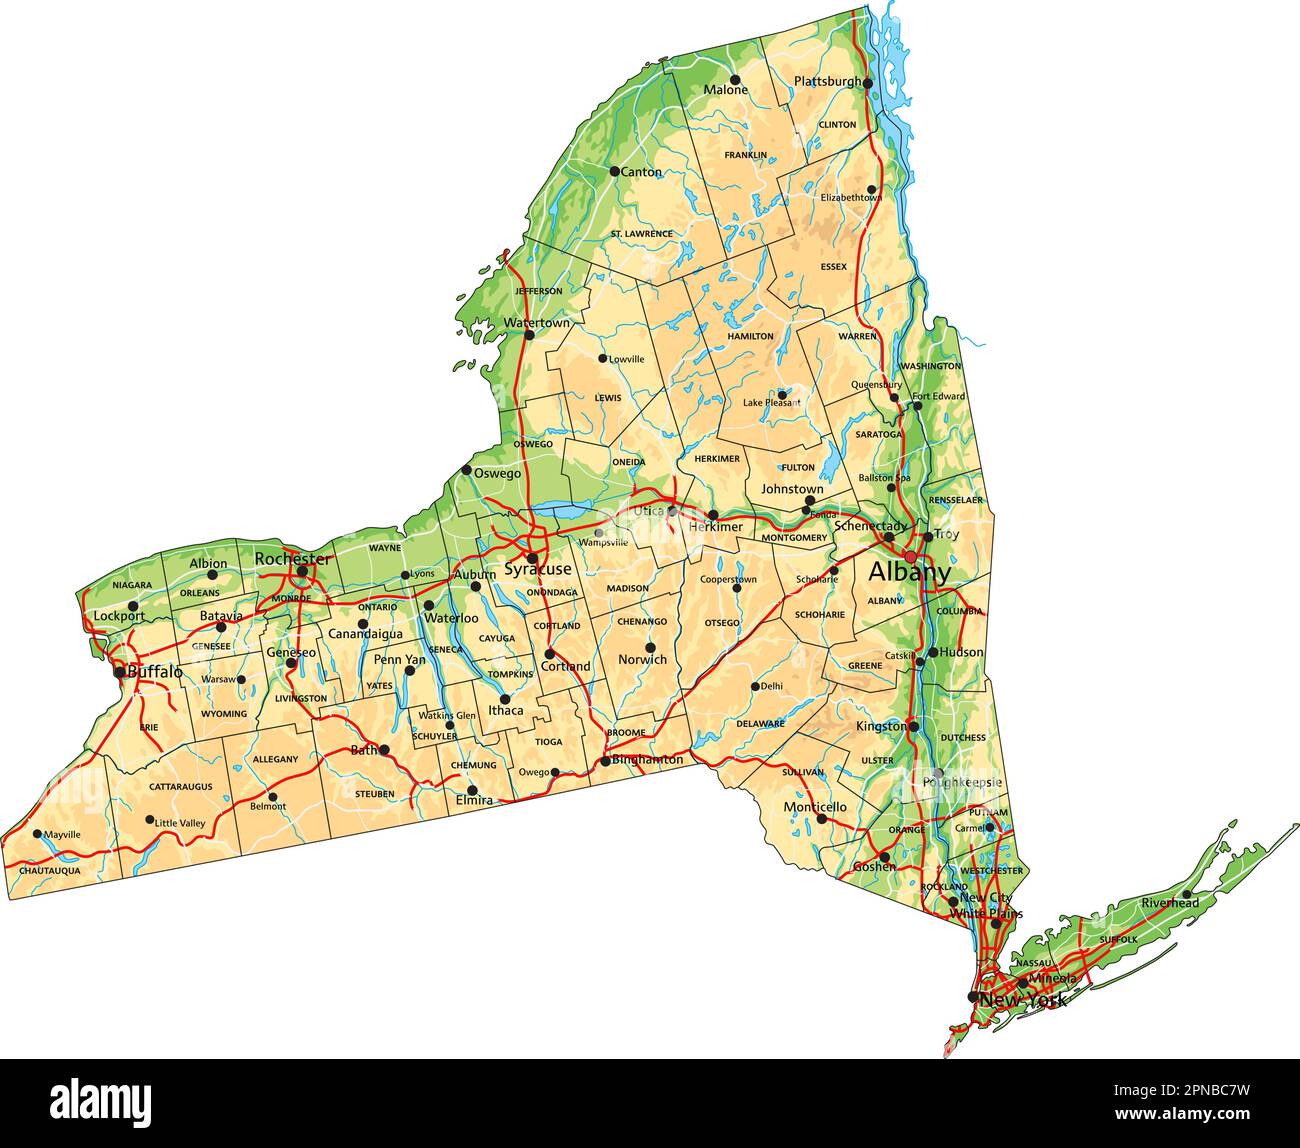 Hochdetaillierte physische Karte von New York mit Beschriftung. Stock Vektor